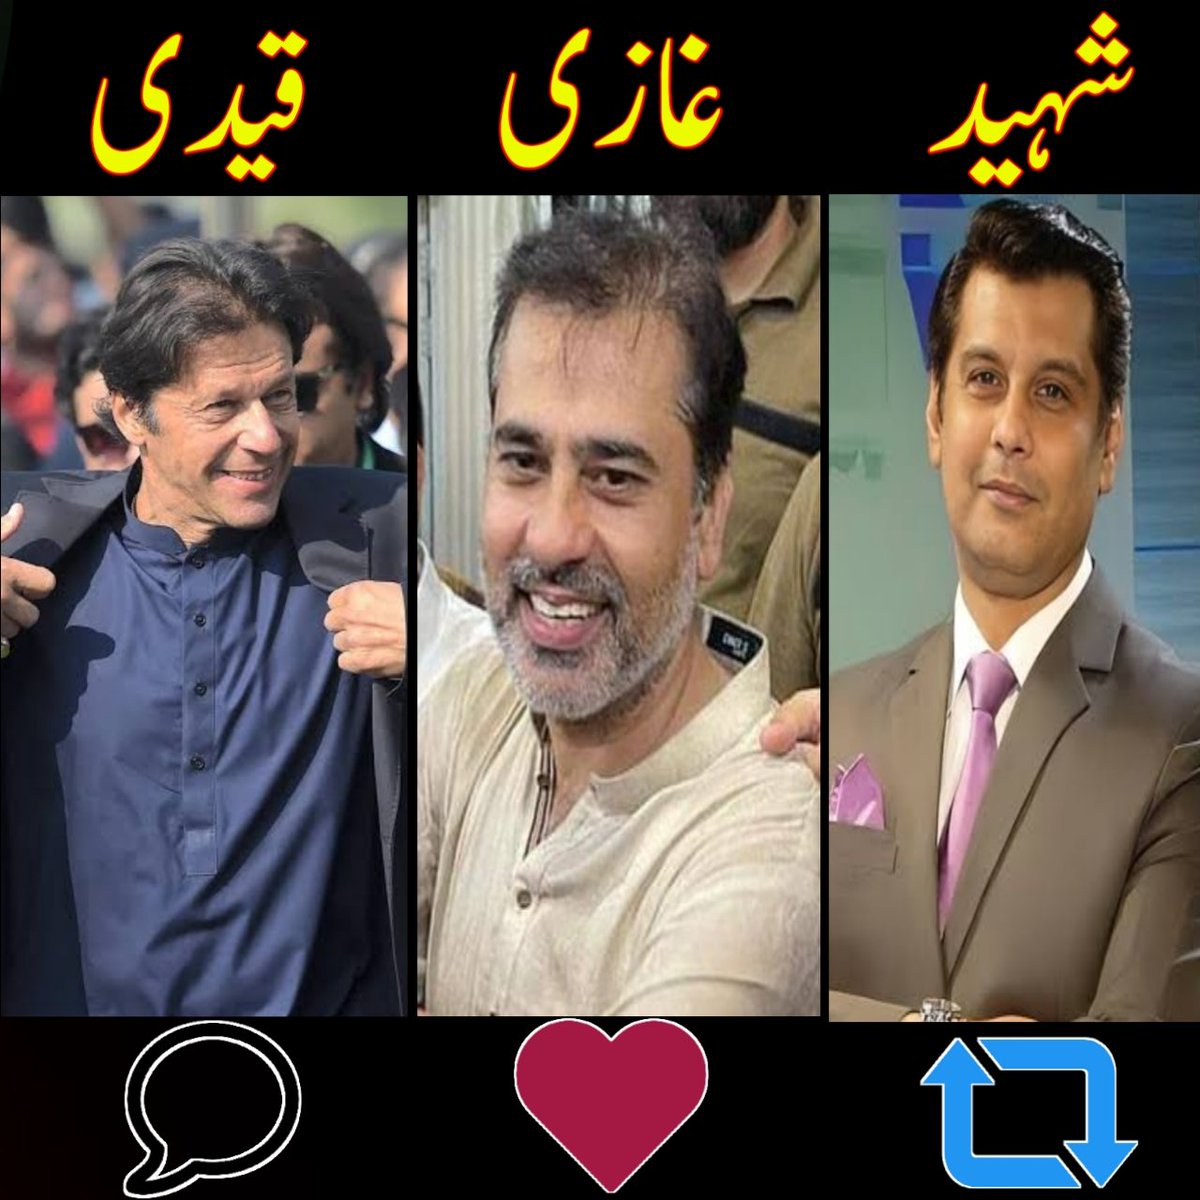 آج اس ٹویٹ پر آنے والے رسپانس سے اندازہ ہو جائے گا کہ پاکستانی قوم ان تین شہزادوں سے کتنی محبت کرتی ہے ..؟؟ @TeamPakPower #خان_ٹوٹا_نا_اسکی_عوام